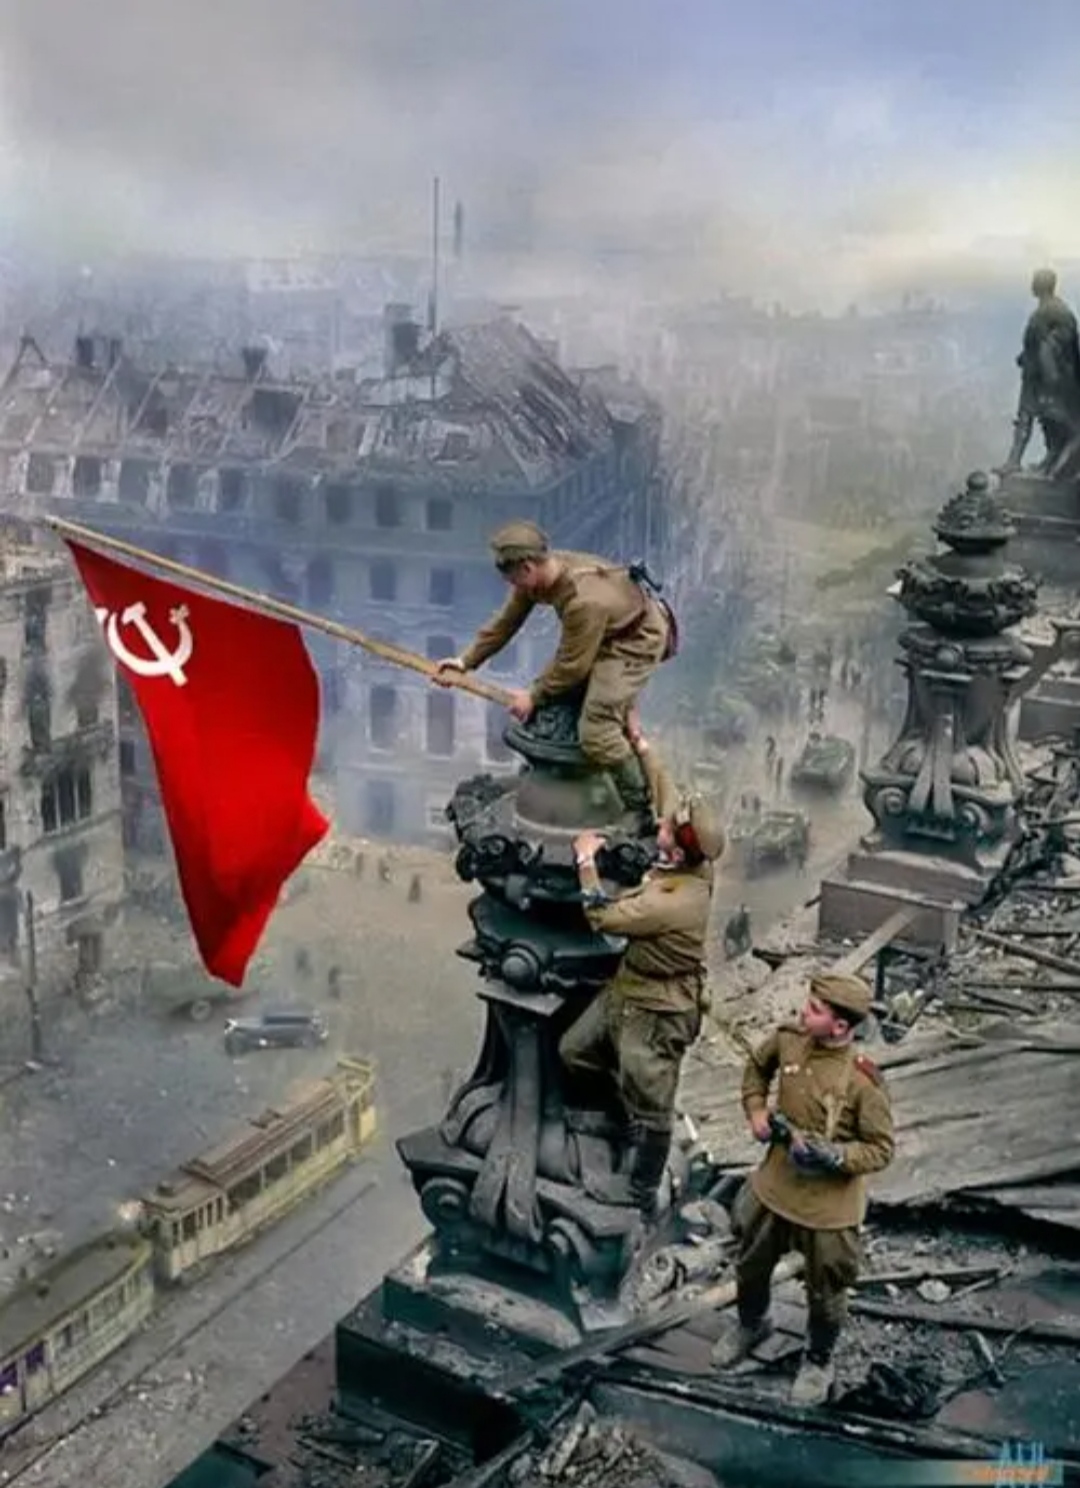 苏联单枪匹马攻占柏林，更重要意义在于震慑英美-民族史